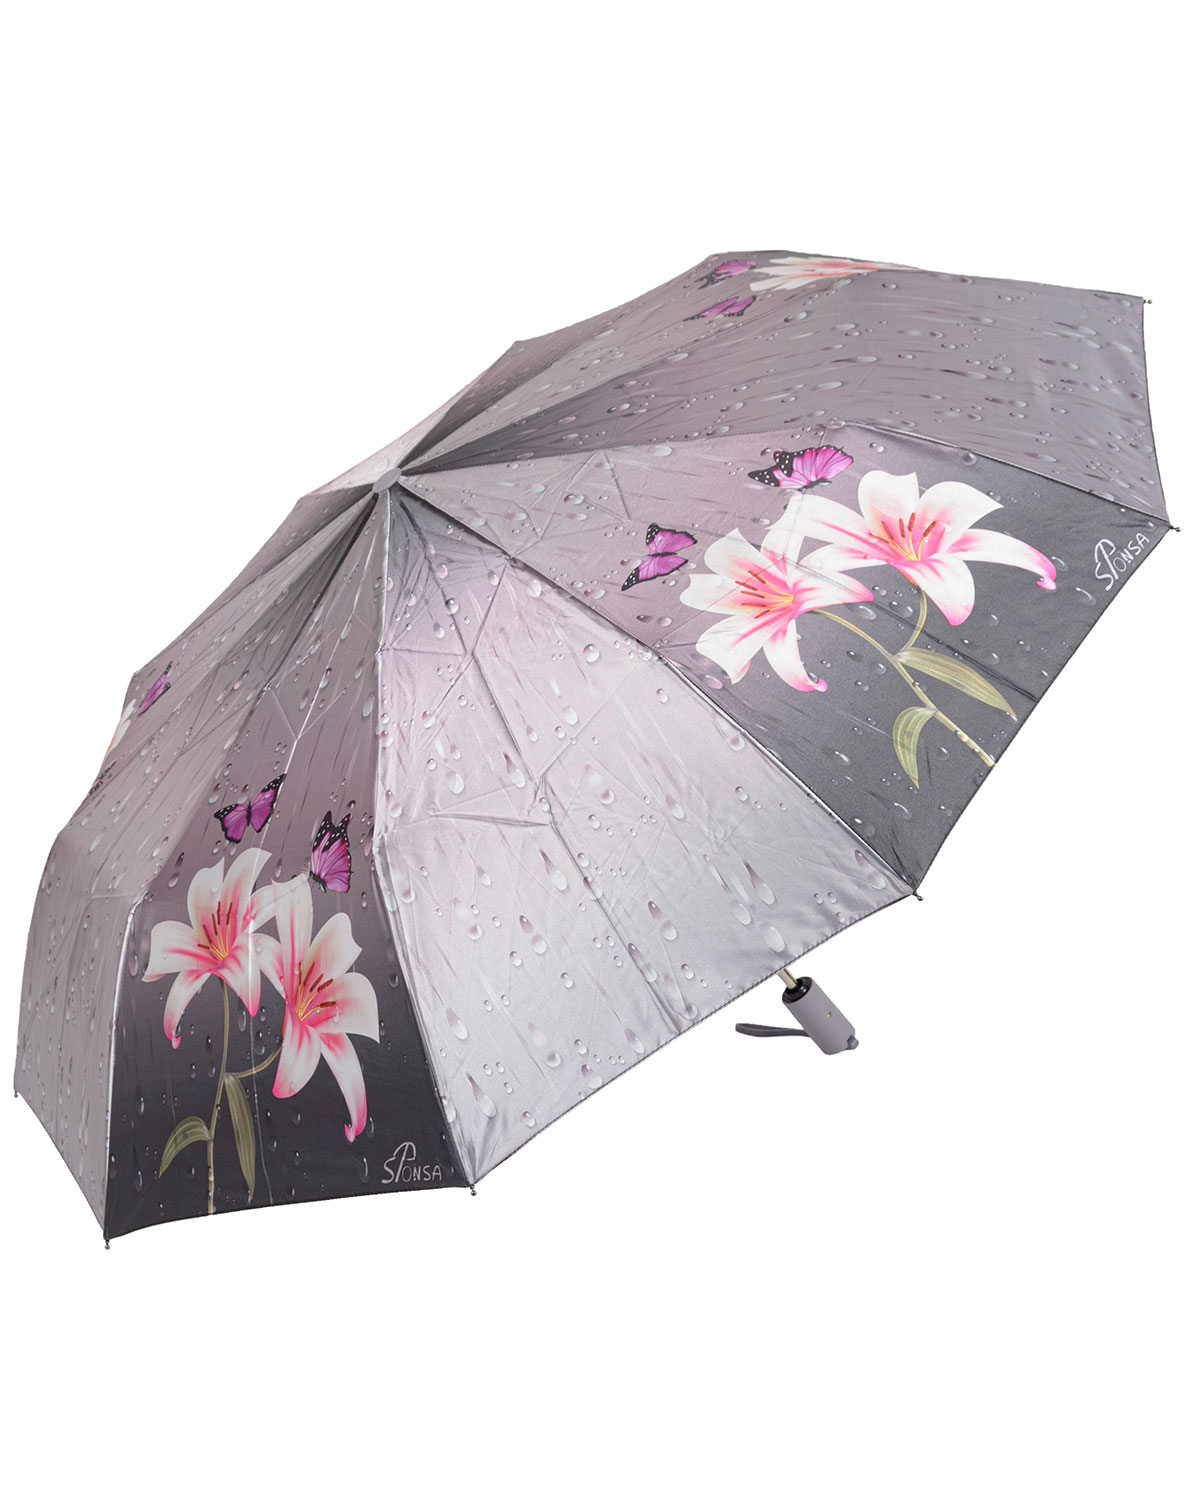 Зонт женский Sponsa 7002-SCP розовый